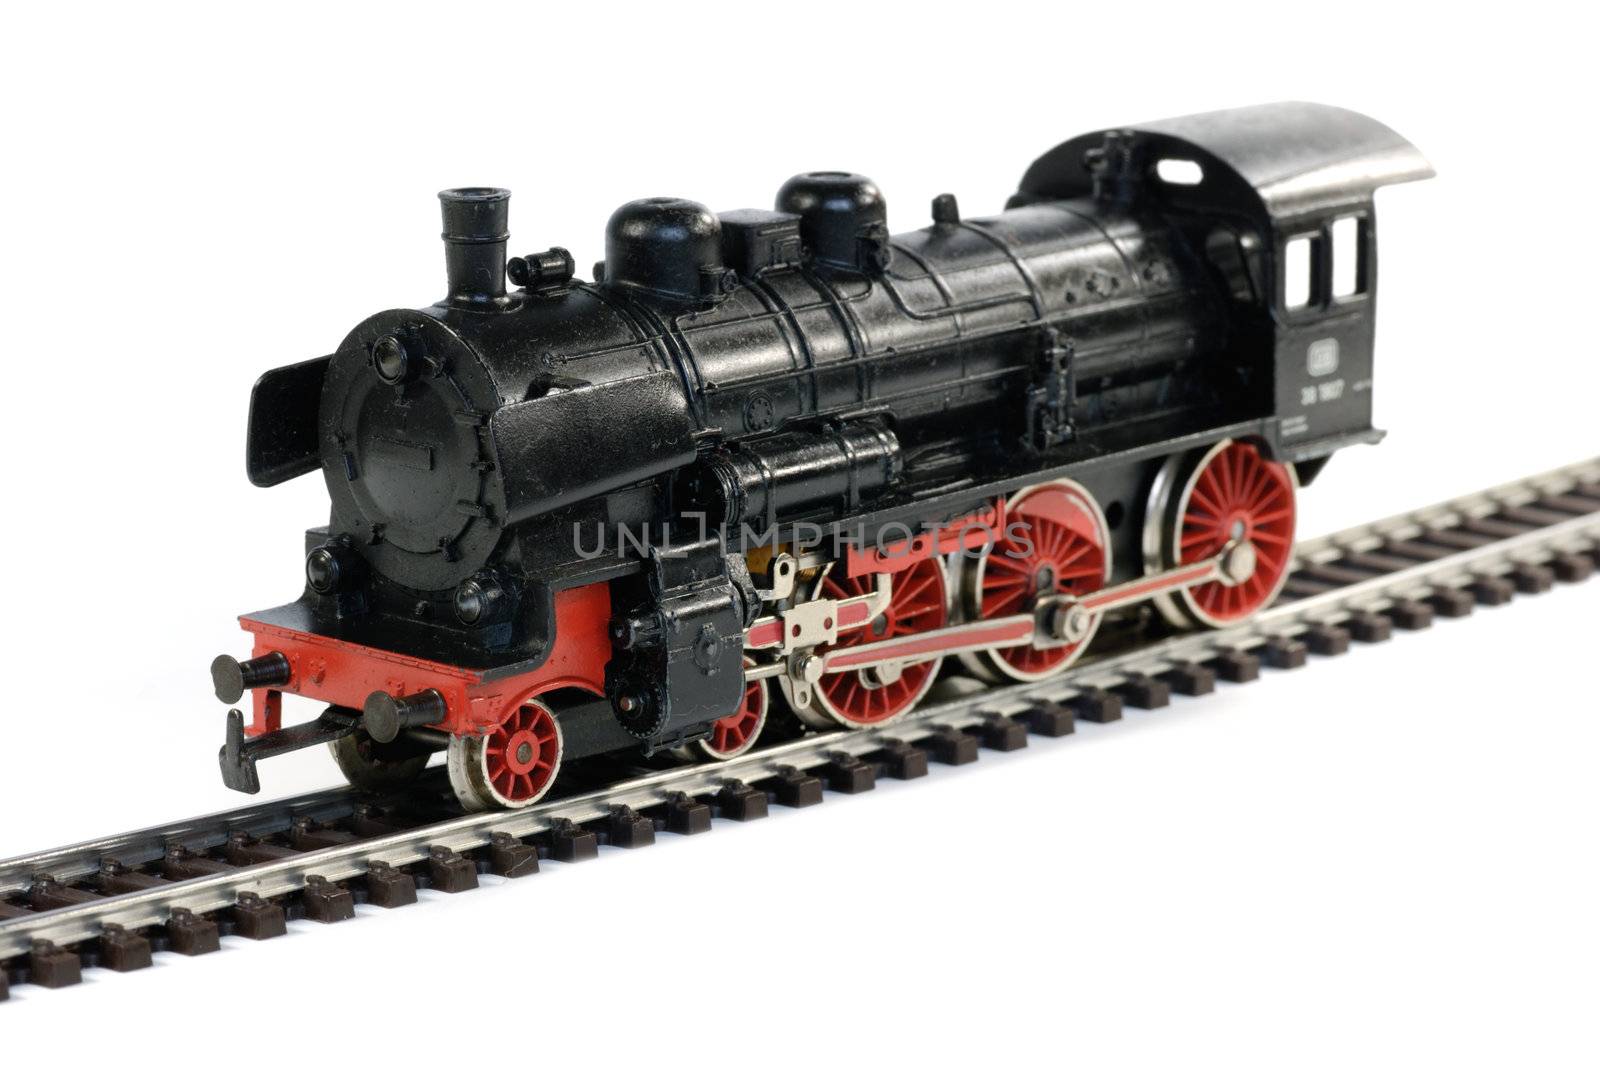 Western model railway by fahrner